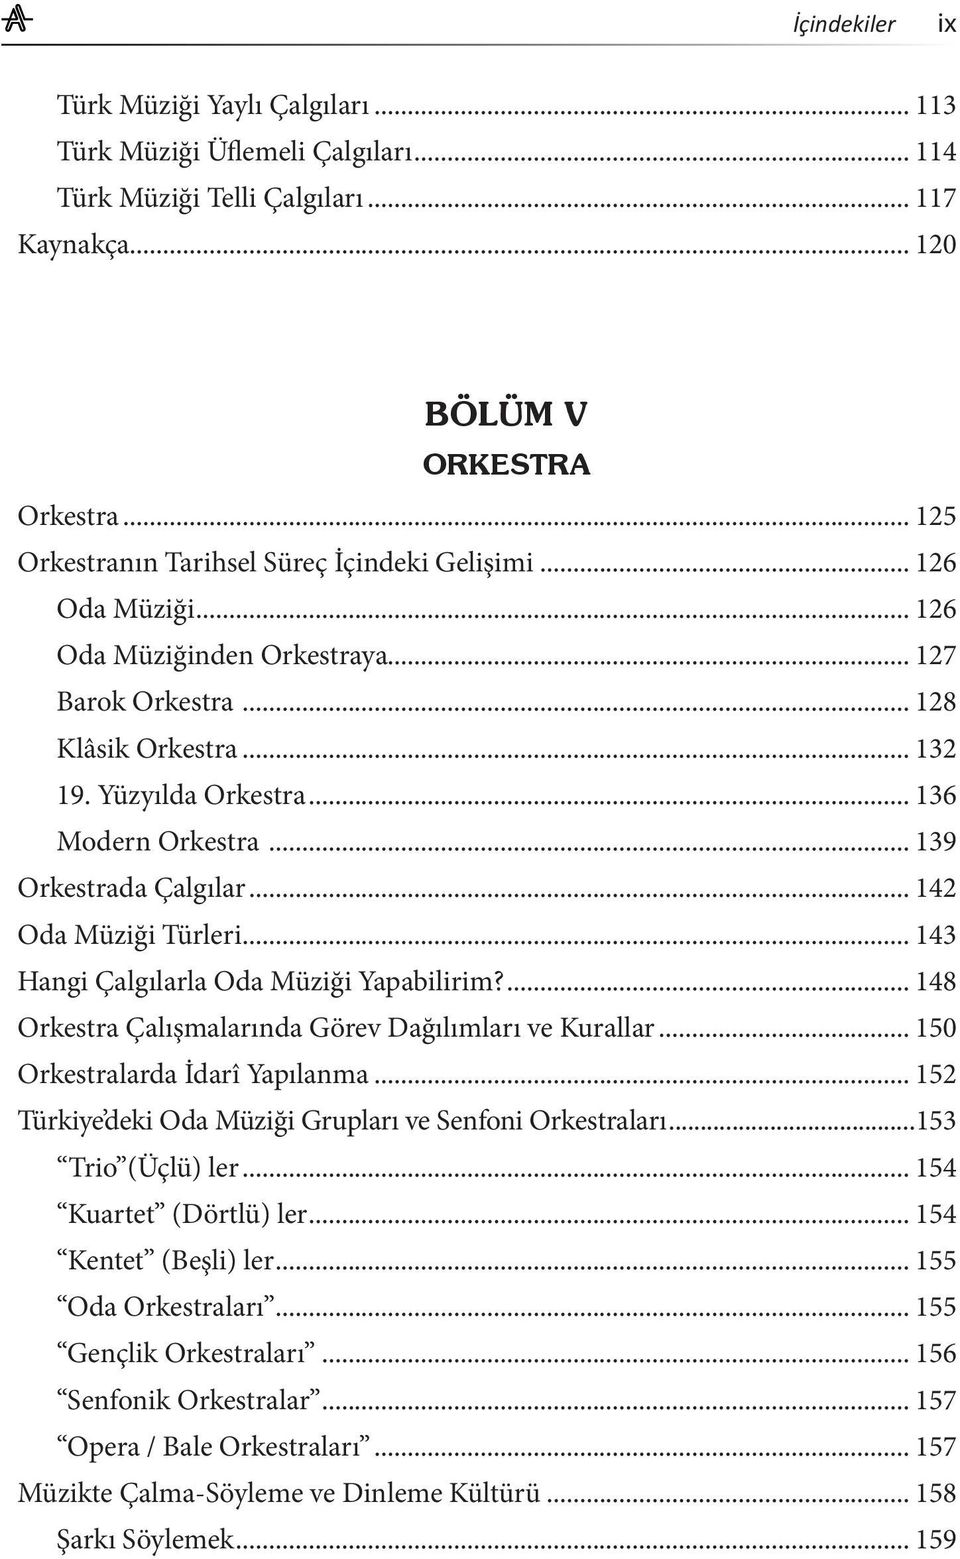 .. 143 Hangi Çalgılarla Oda Müziği Yapabilirim?... 148 Orkestra Çalışmalarında Görev Dağılımları ve Kurallar... 150 Orkestralarda İdarî Yapılanma.